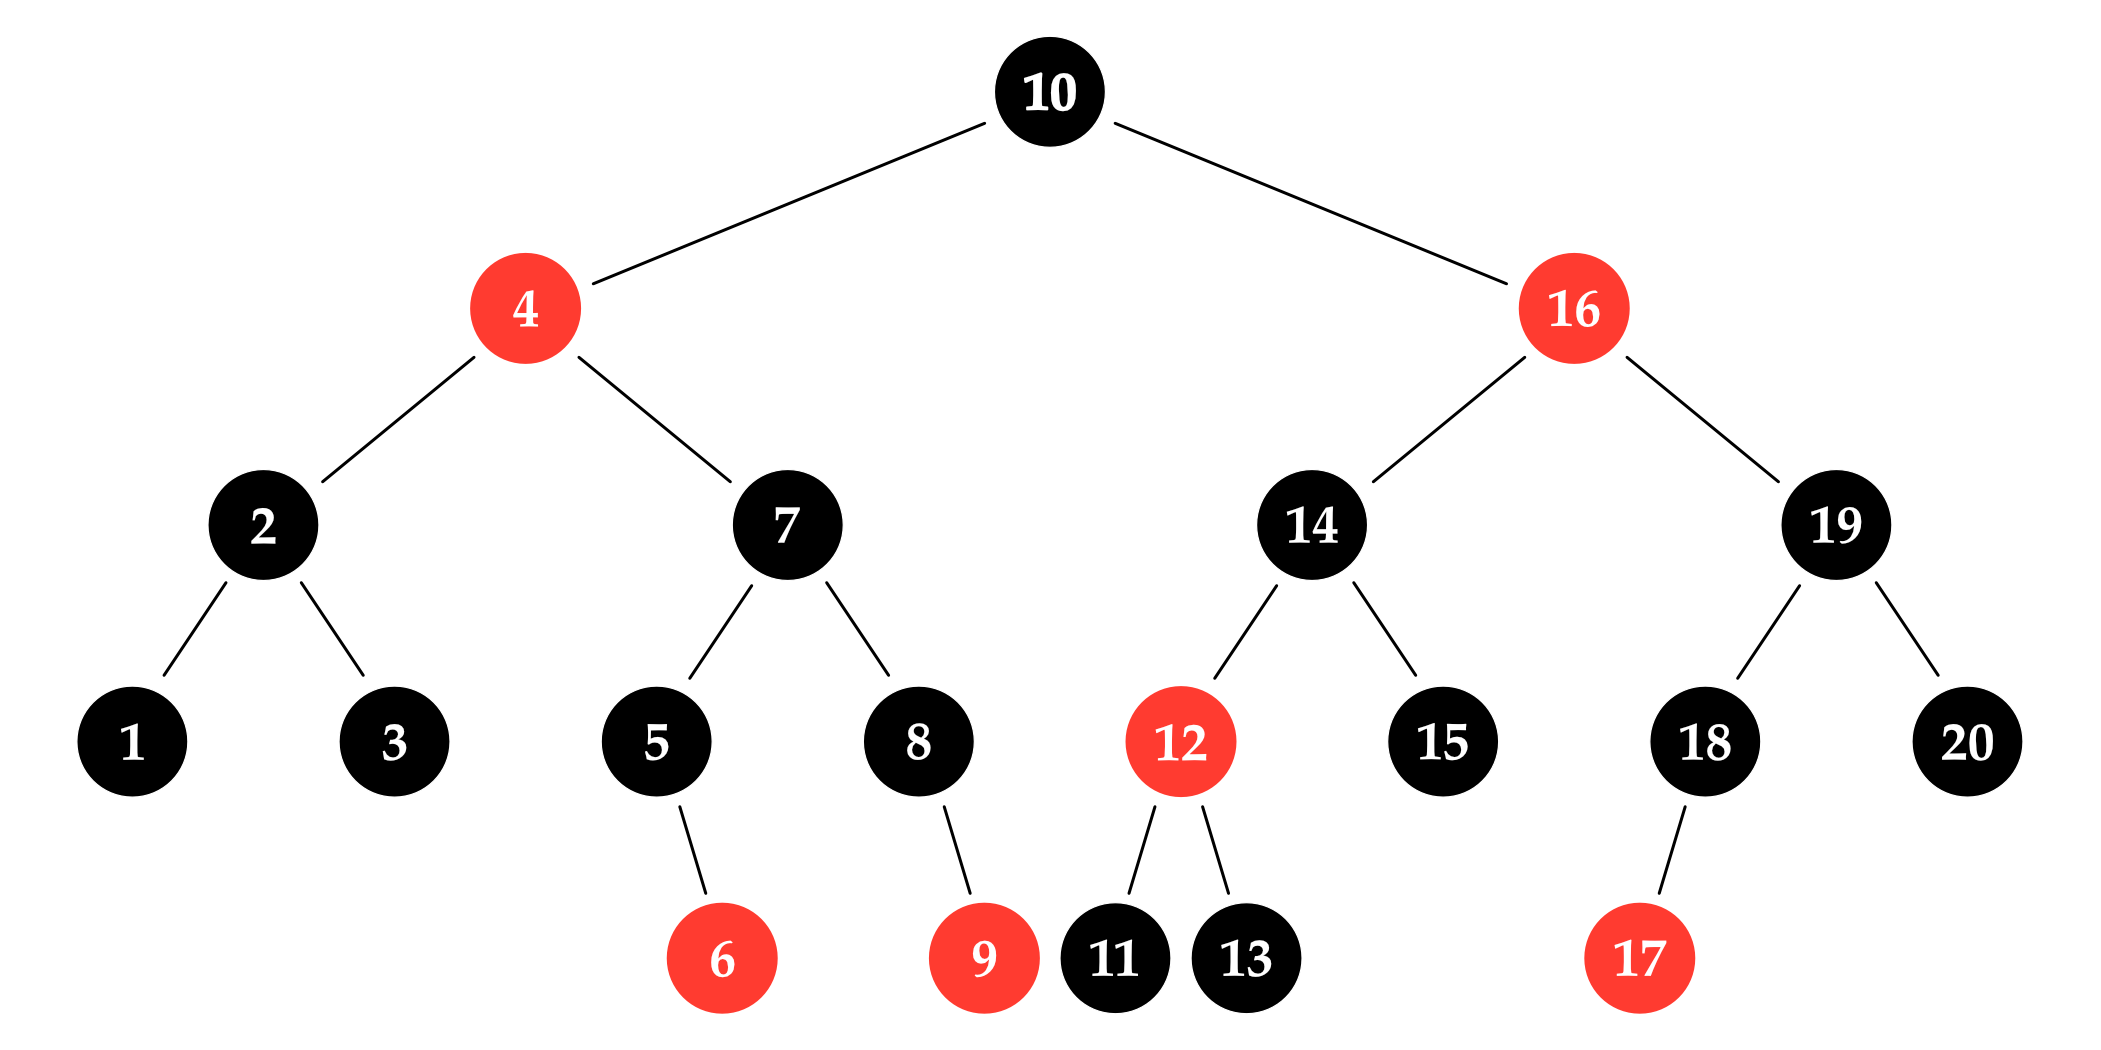 图 4.2: 一棵示例红黑树。